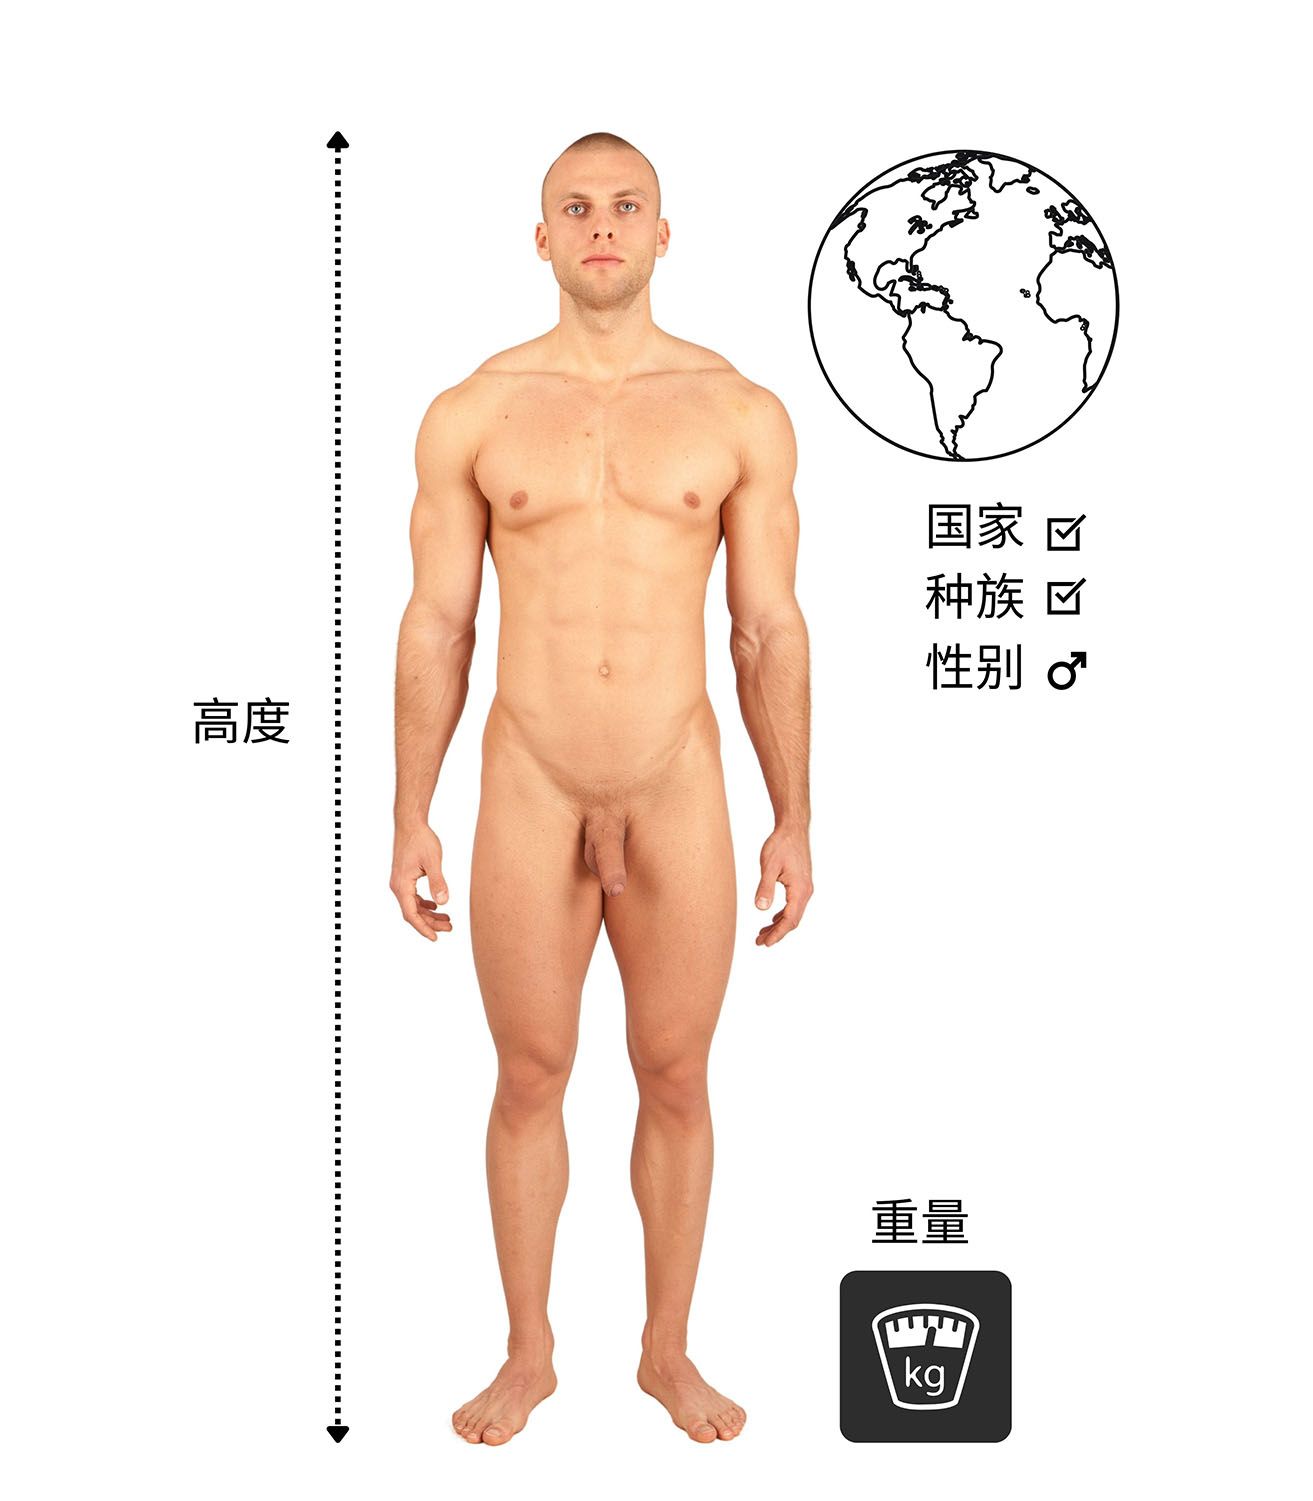 裸体男子测量他的身高、体重和种族背景。